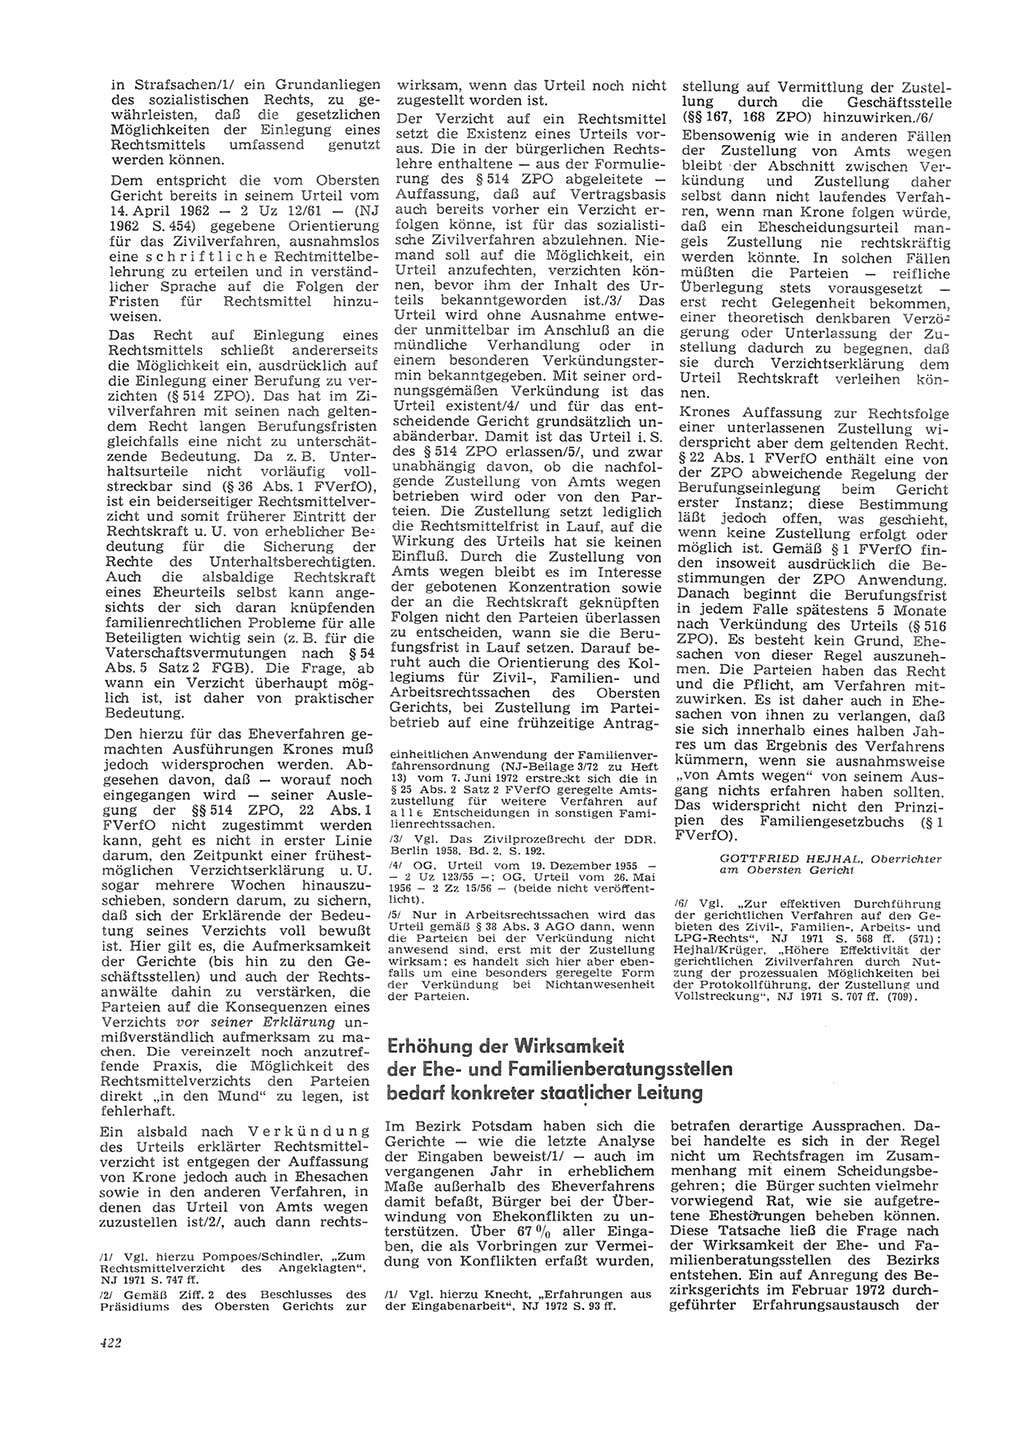 Neue Justiz (NJ), Zeitschrift für Recht und Rechtswissenschaft [Deutsche Demokratische Republik (DDR)], 26. Jahrgang 1972, Seite 422 (NJ DDR 1972, S. 422)